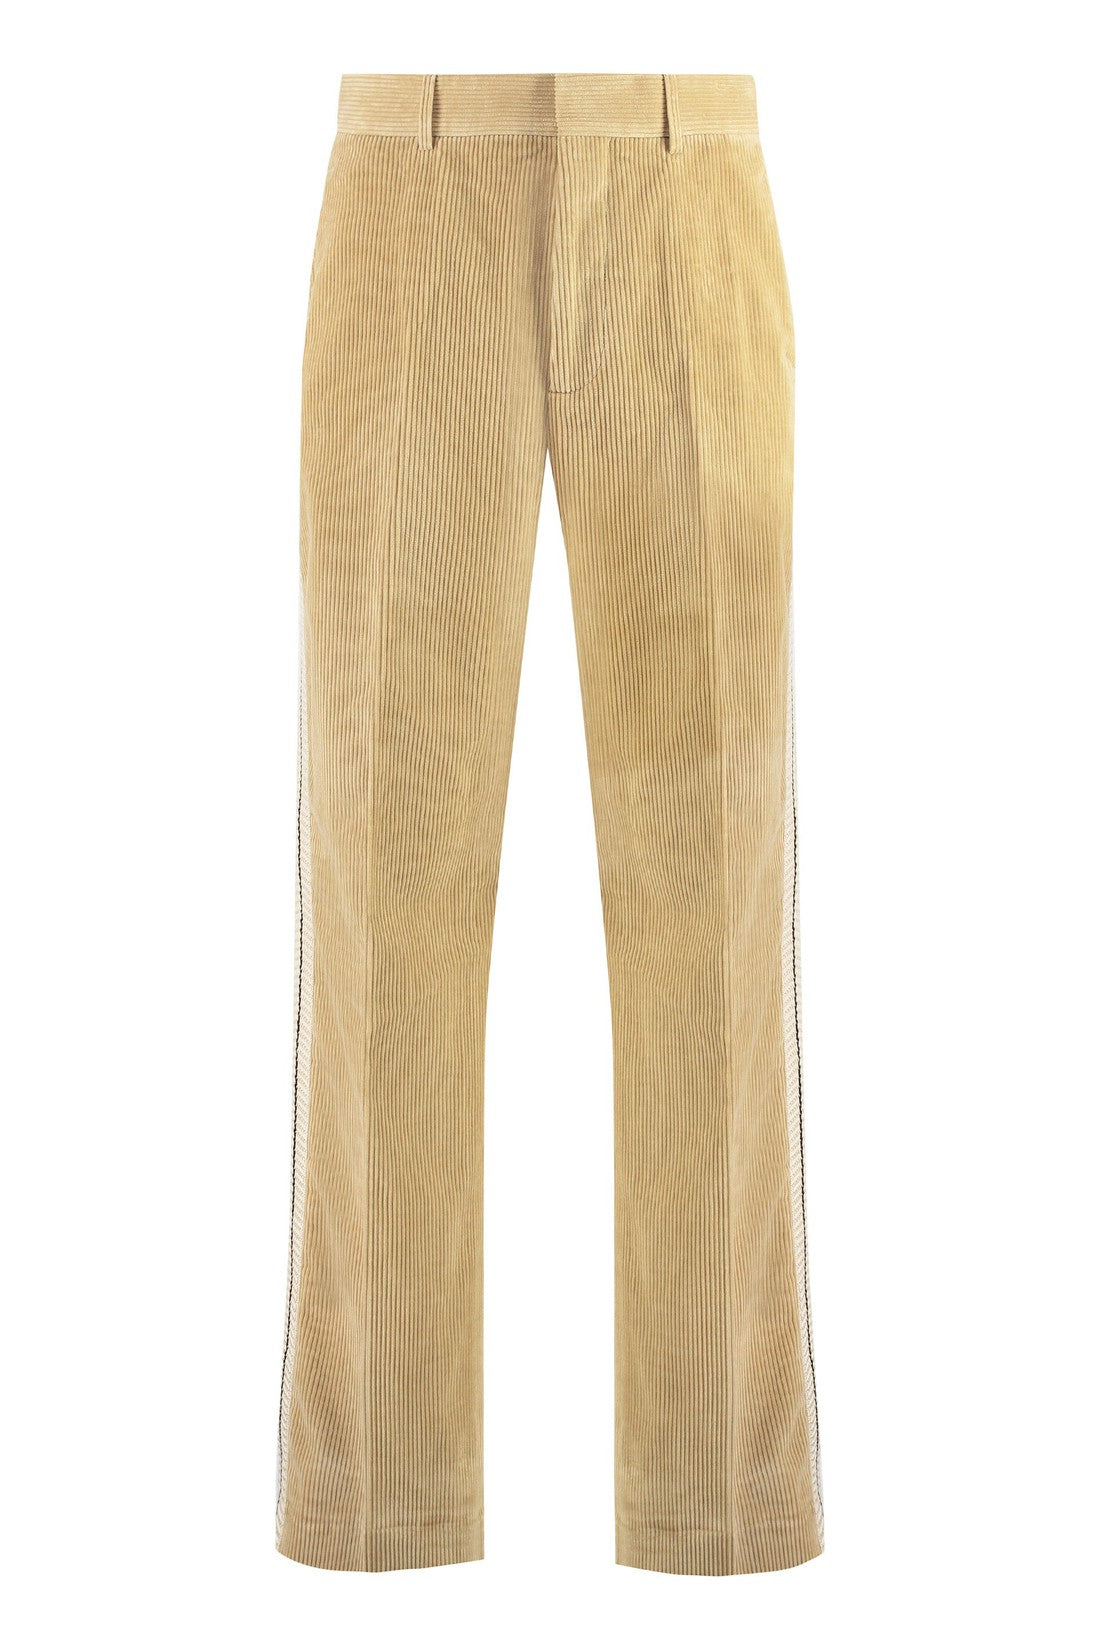 Palm Angels-OUTLET-SALE-Corduroy trousers-ARCHIVIST